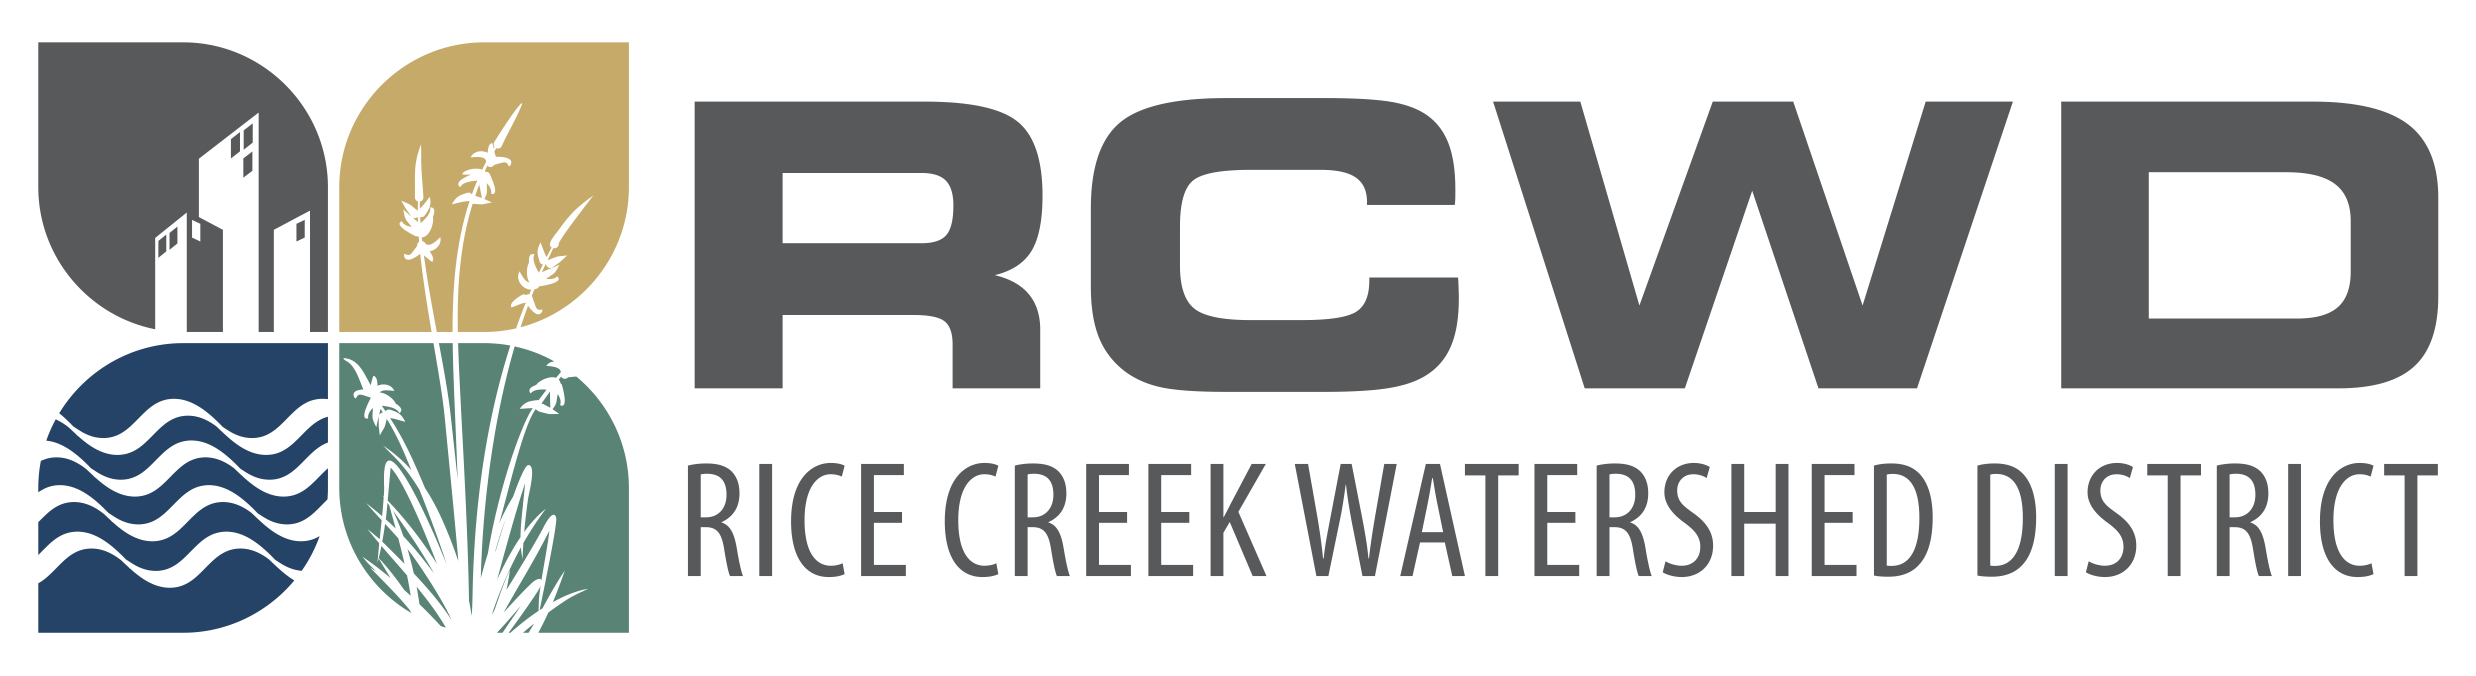 Rice Creek Watershed District logo